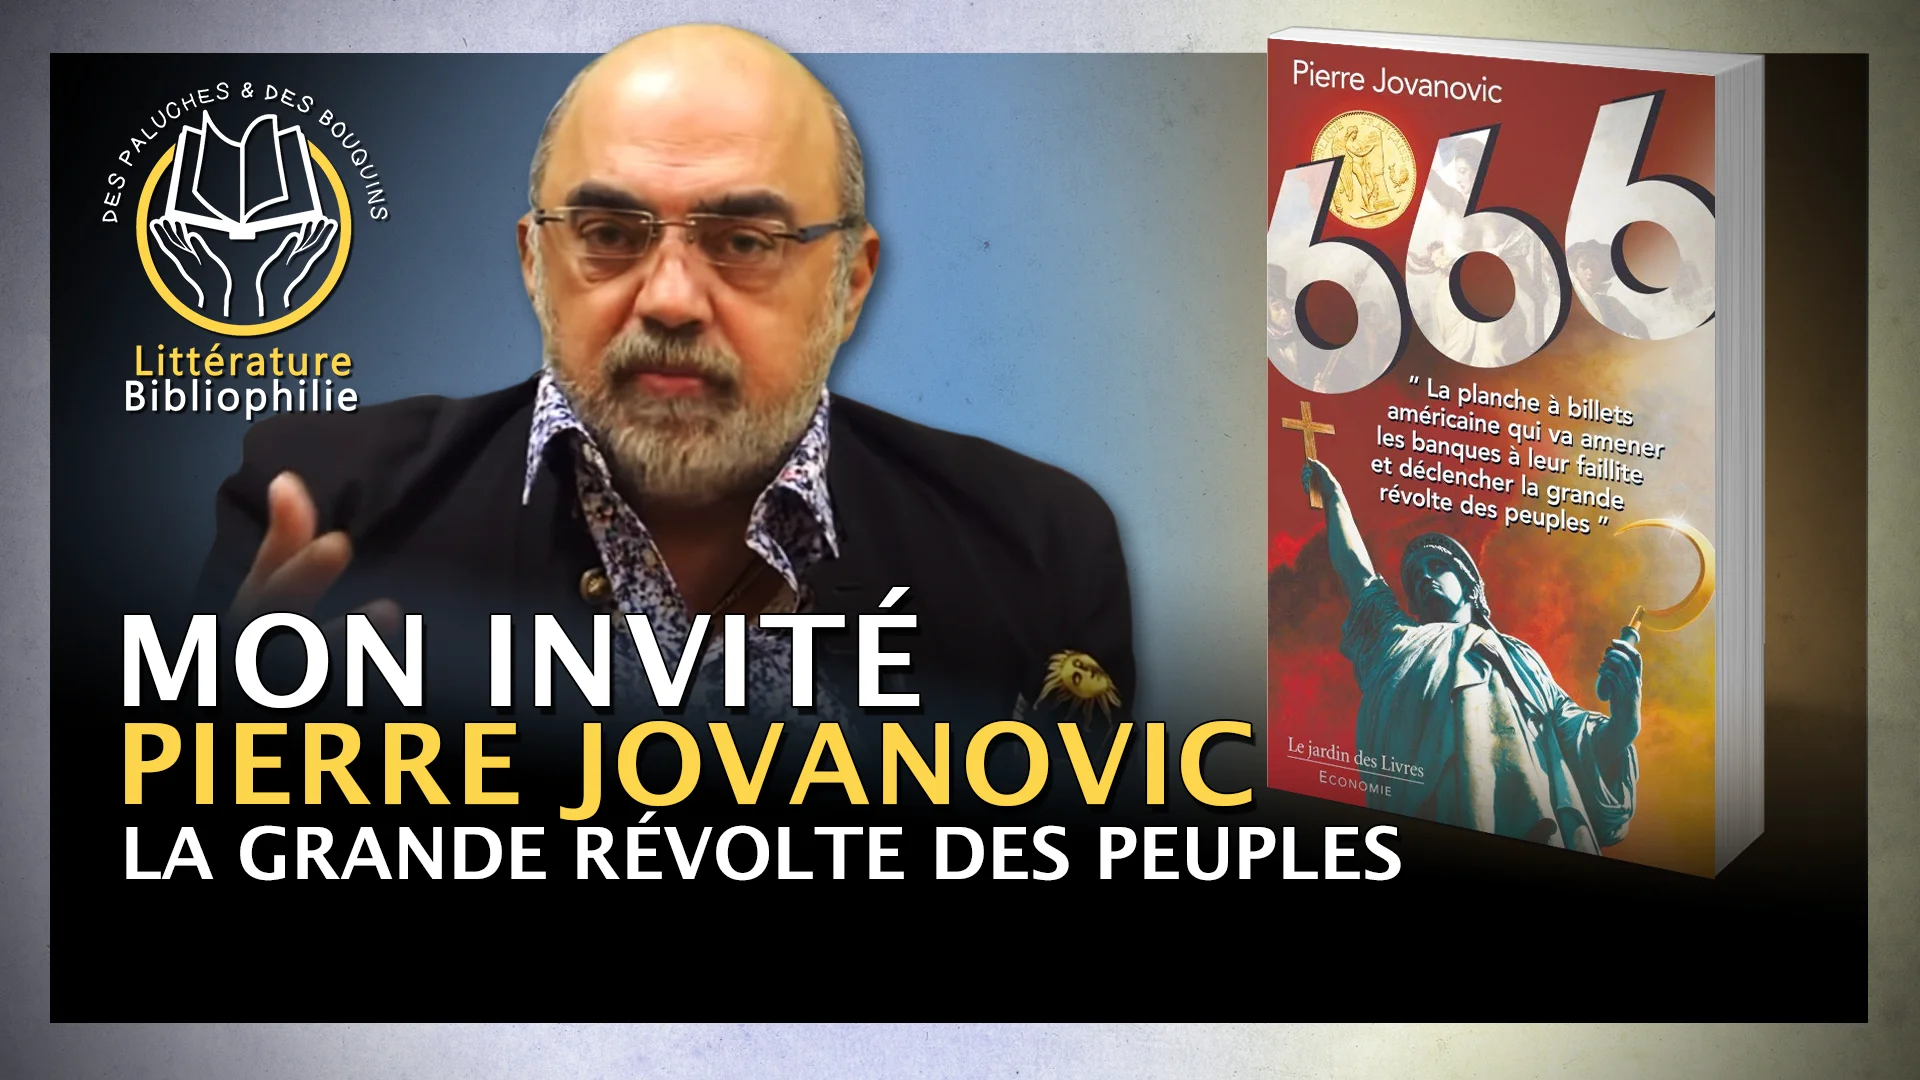 Pierre Jovanovic – 666, La grande révolte des peuples.